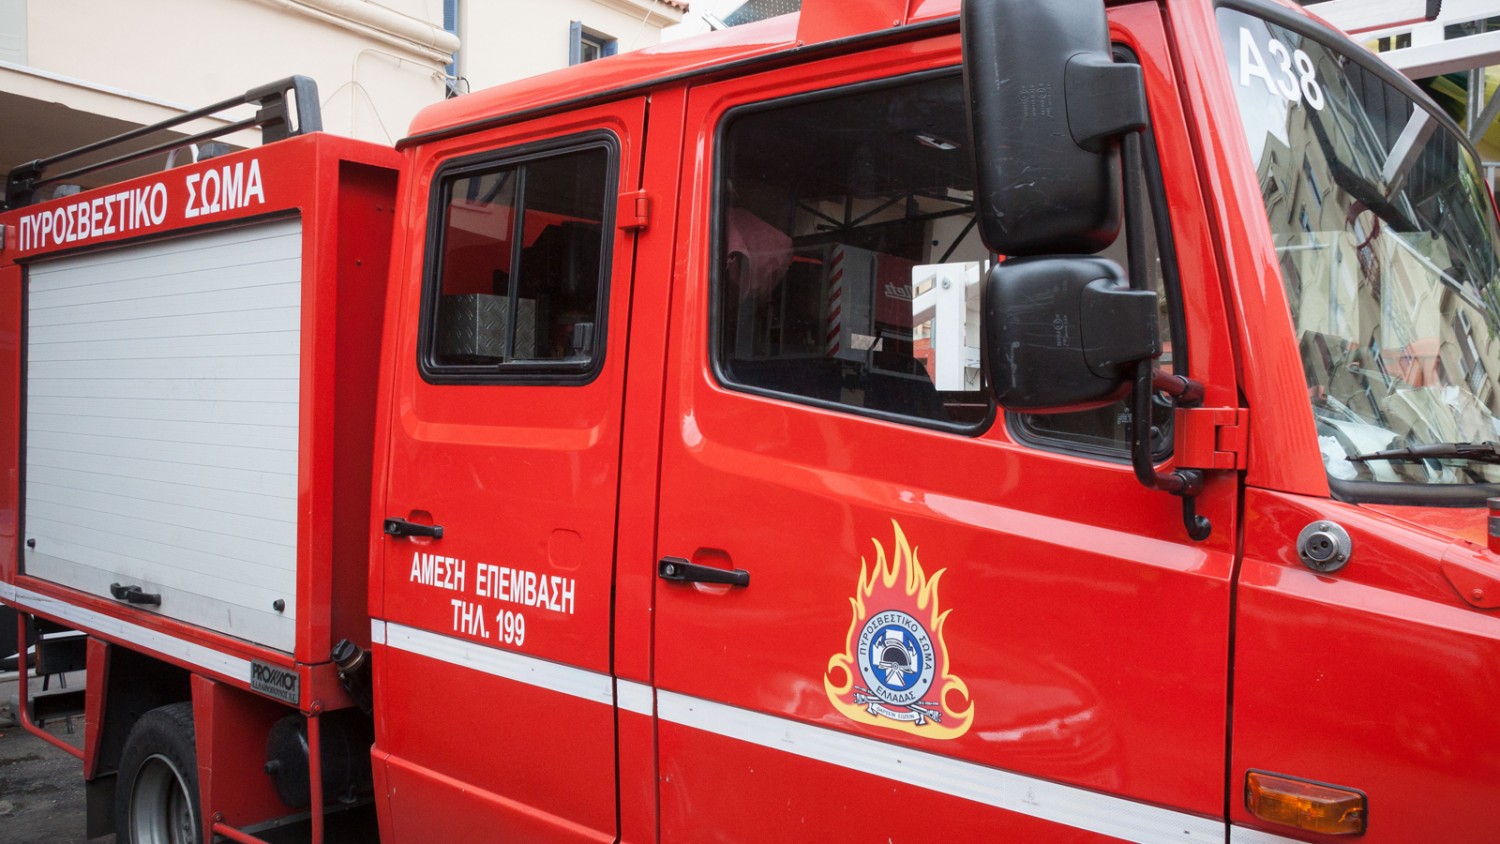 Συναγερμός στην Αγία Παρασκευή: Λεωφορείο πήρε φωτιά εν κινήσει